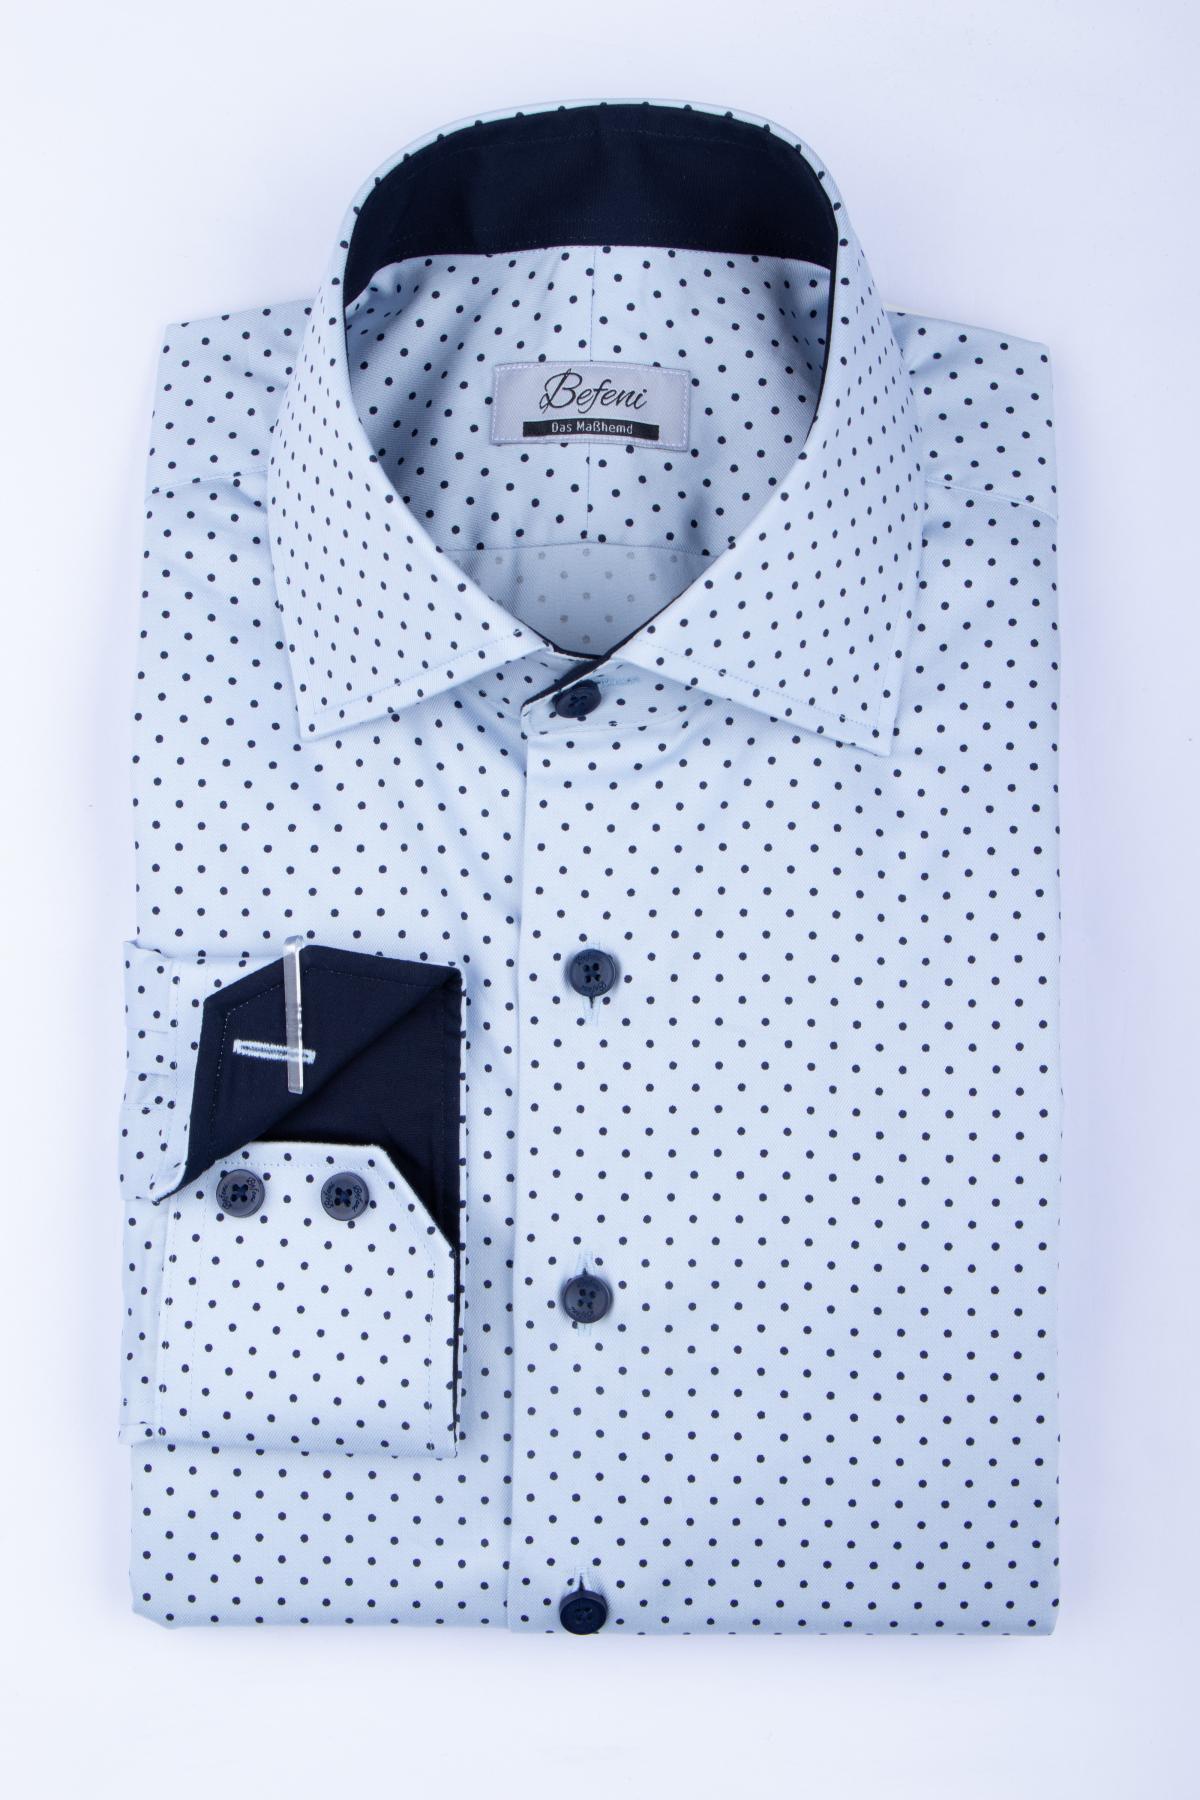 Maßhemden für echte Herren  Hemden einfach selbst designt